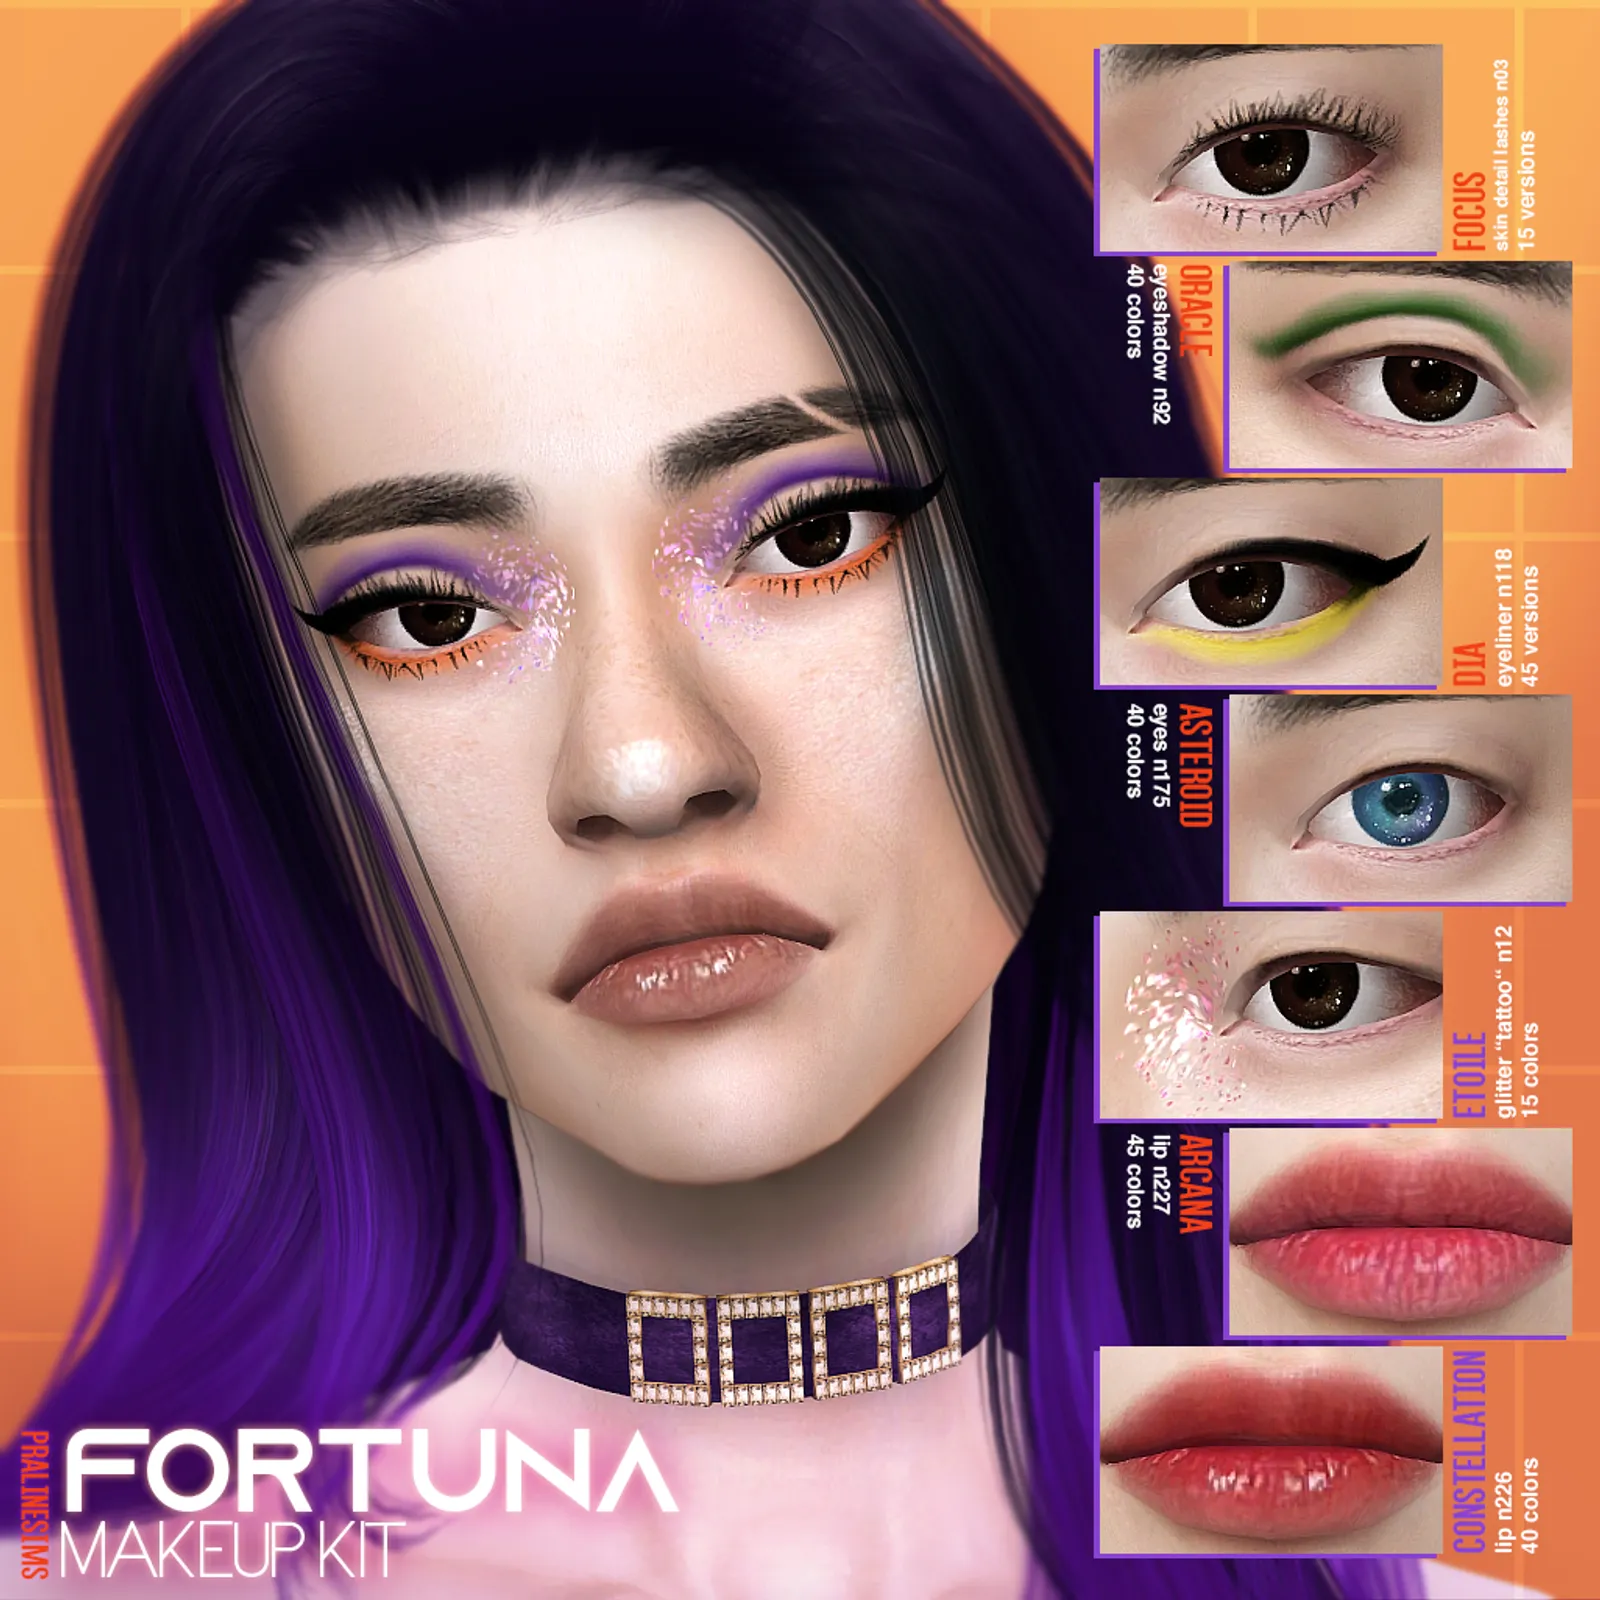 FORTUNA Makeup Kit